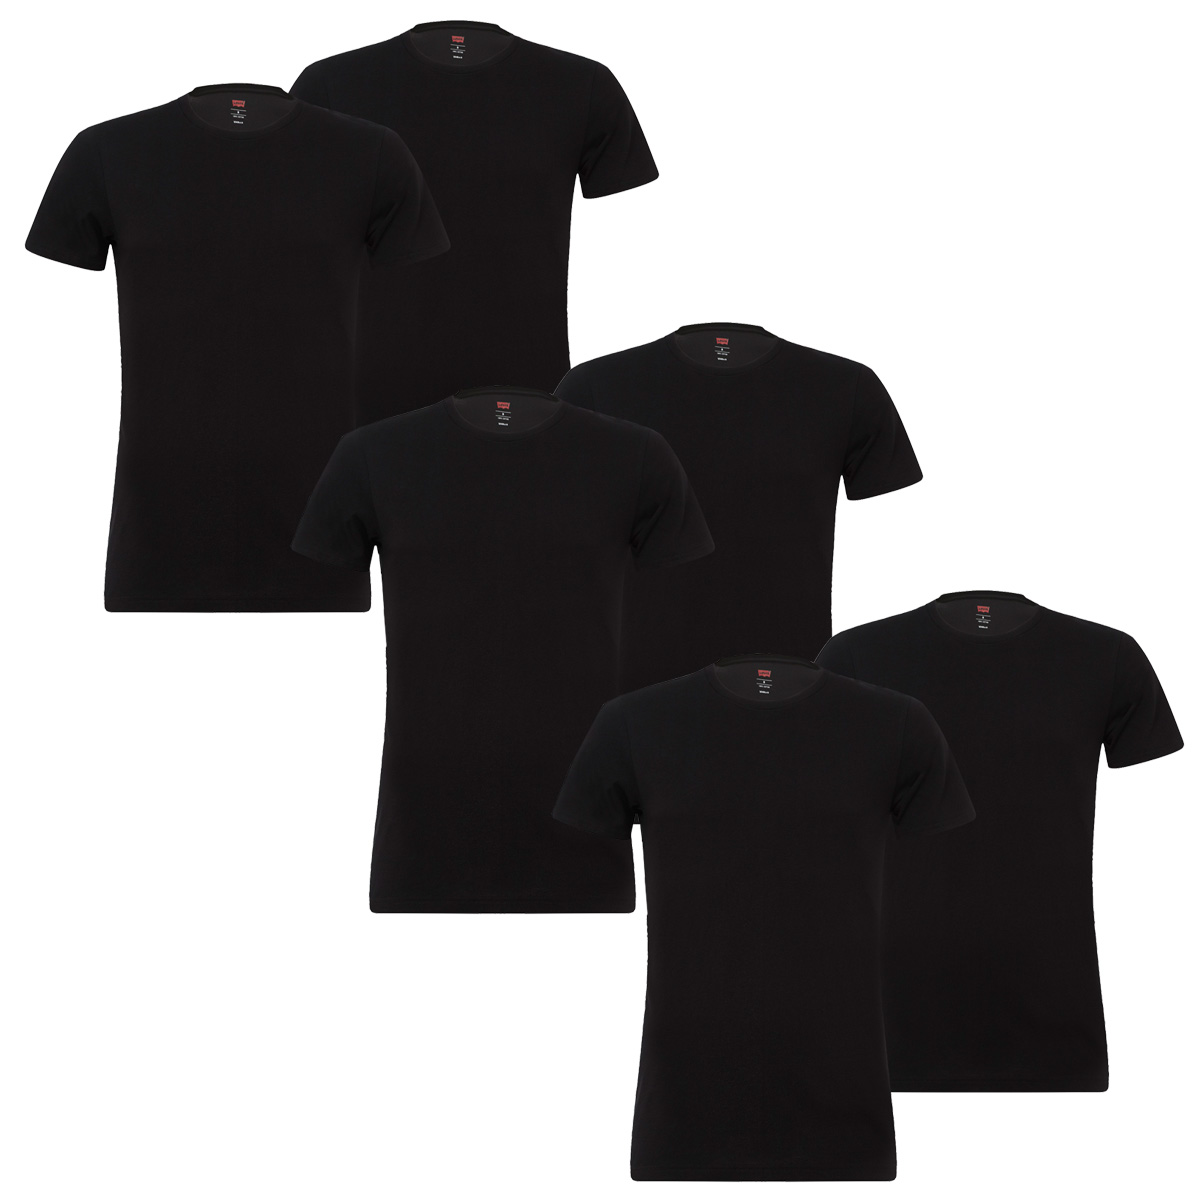 6 er Pack Levis 200SF Crew T-Shirt Men Herren Unterhemd Rundhals